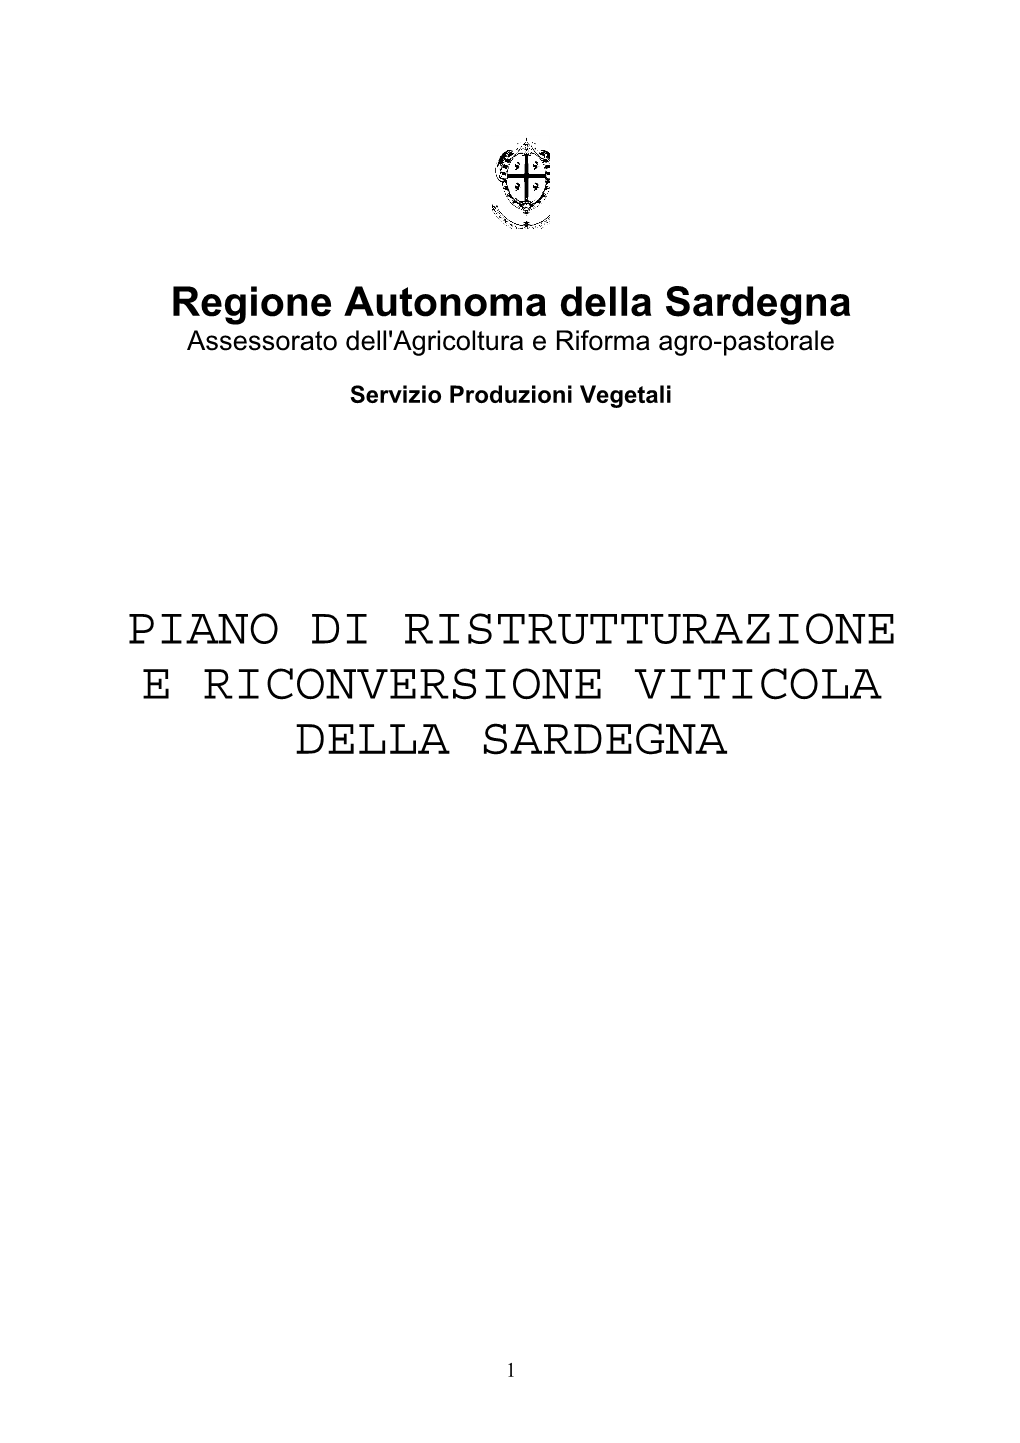 Piano Di Ristrutturazione E Riconversione Viticola Della Sardegna